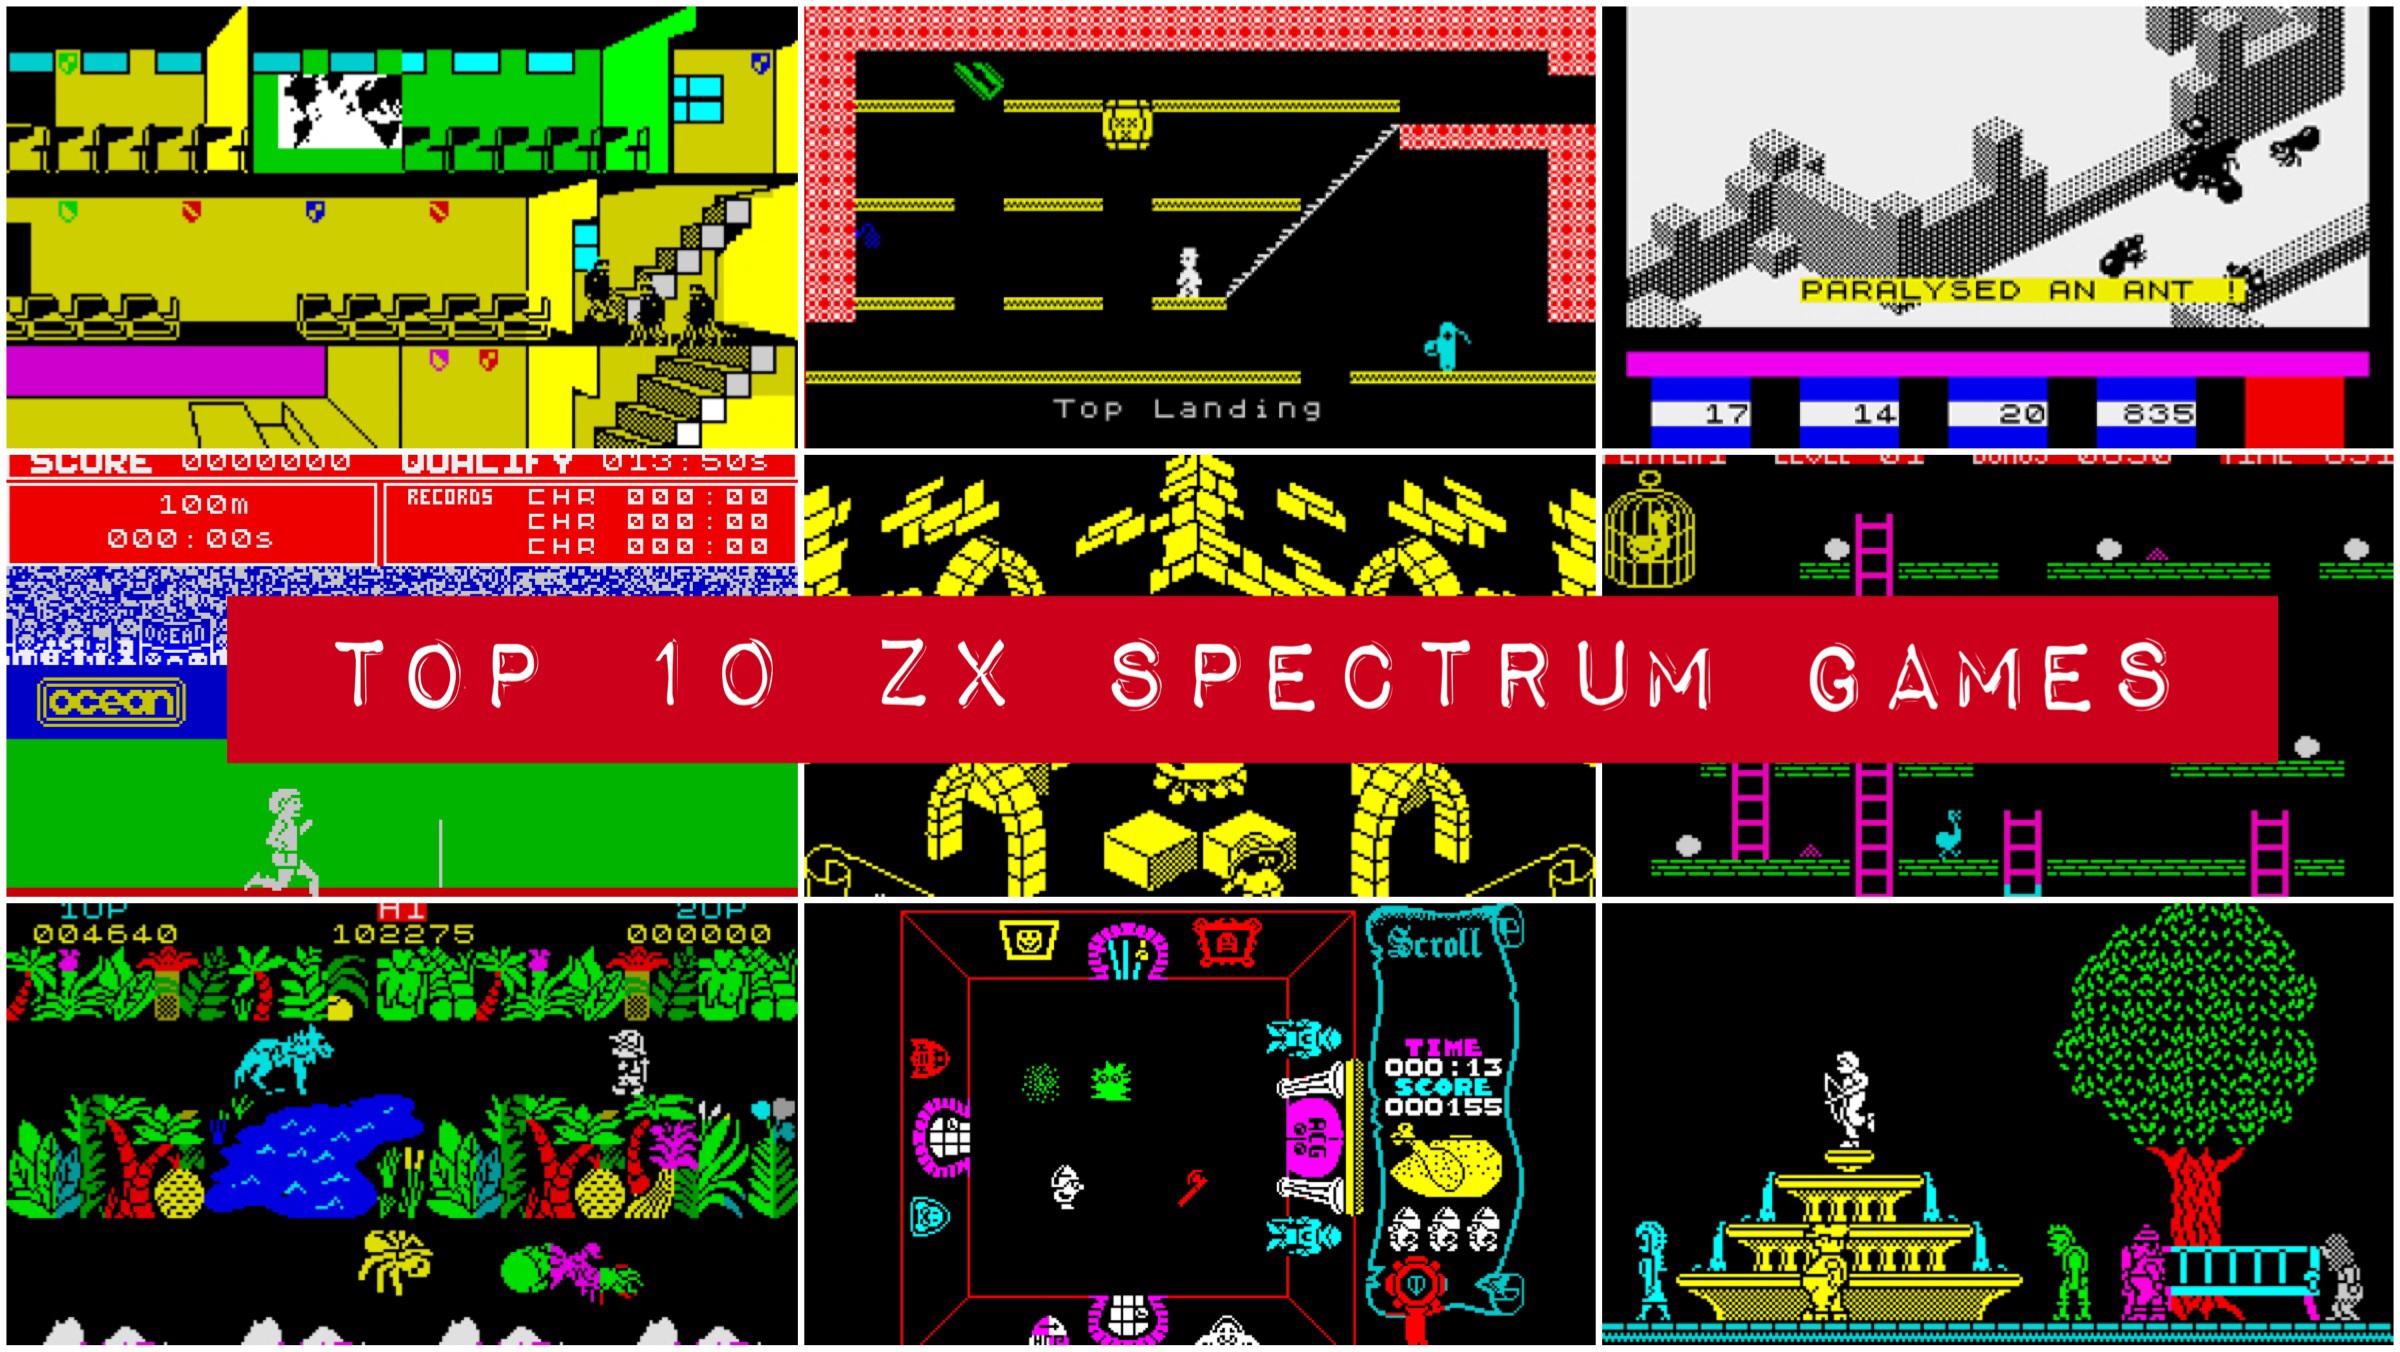 Top 10 Spectrum Games